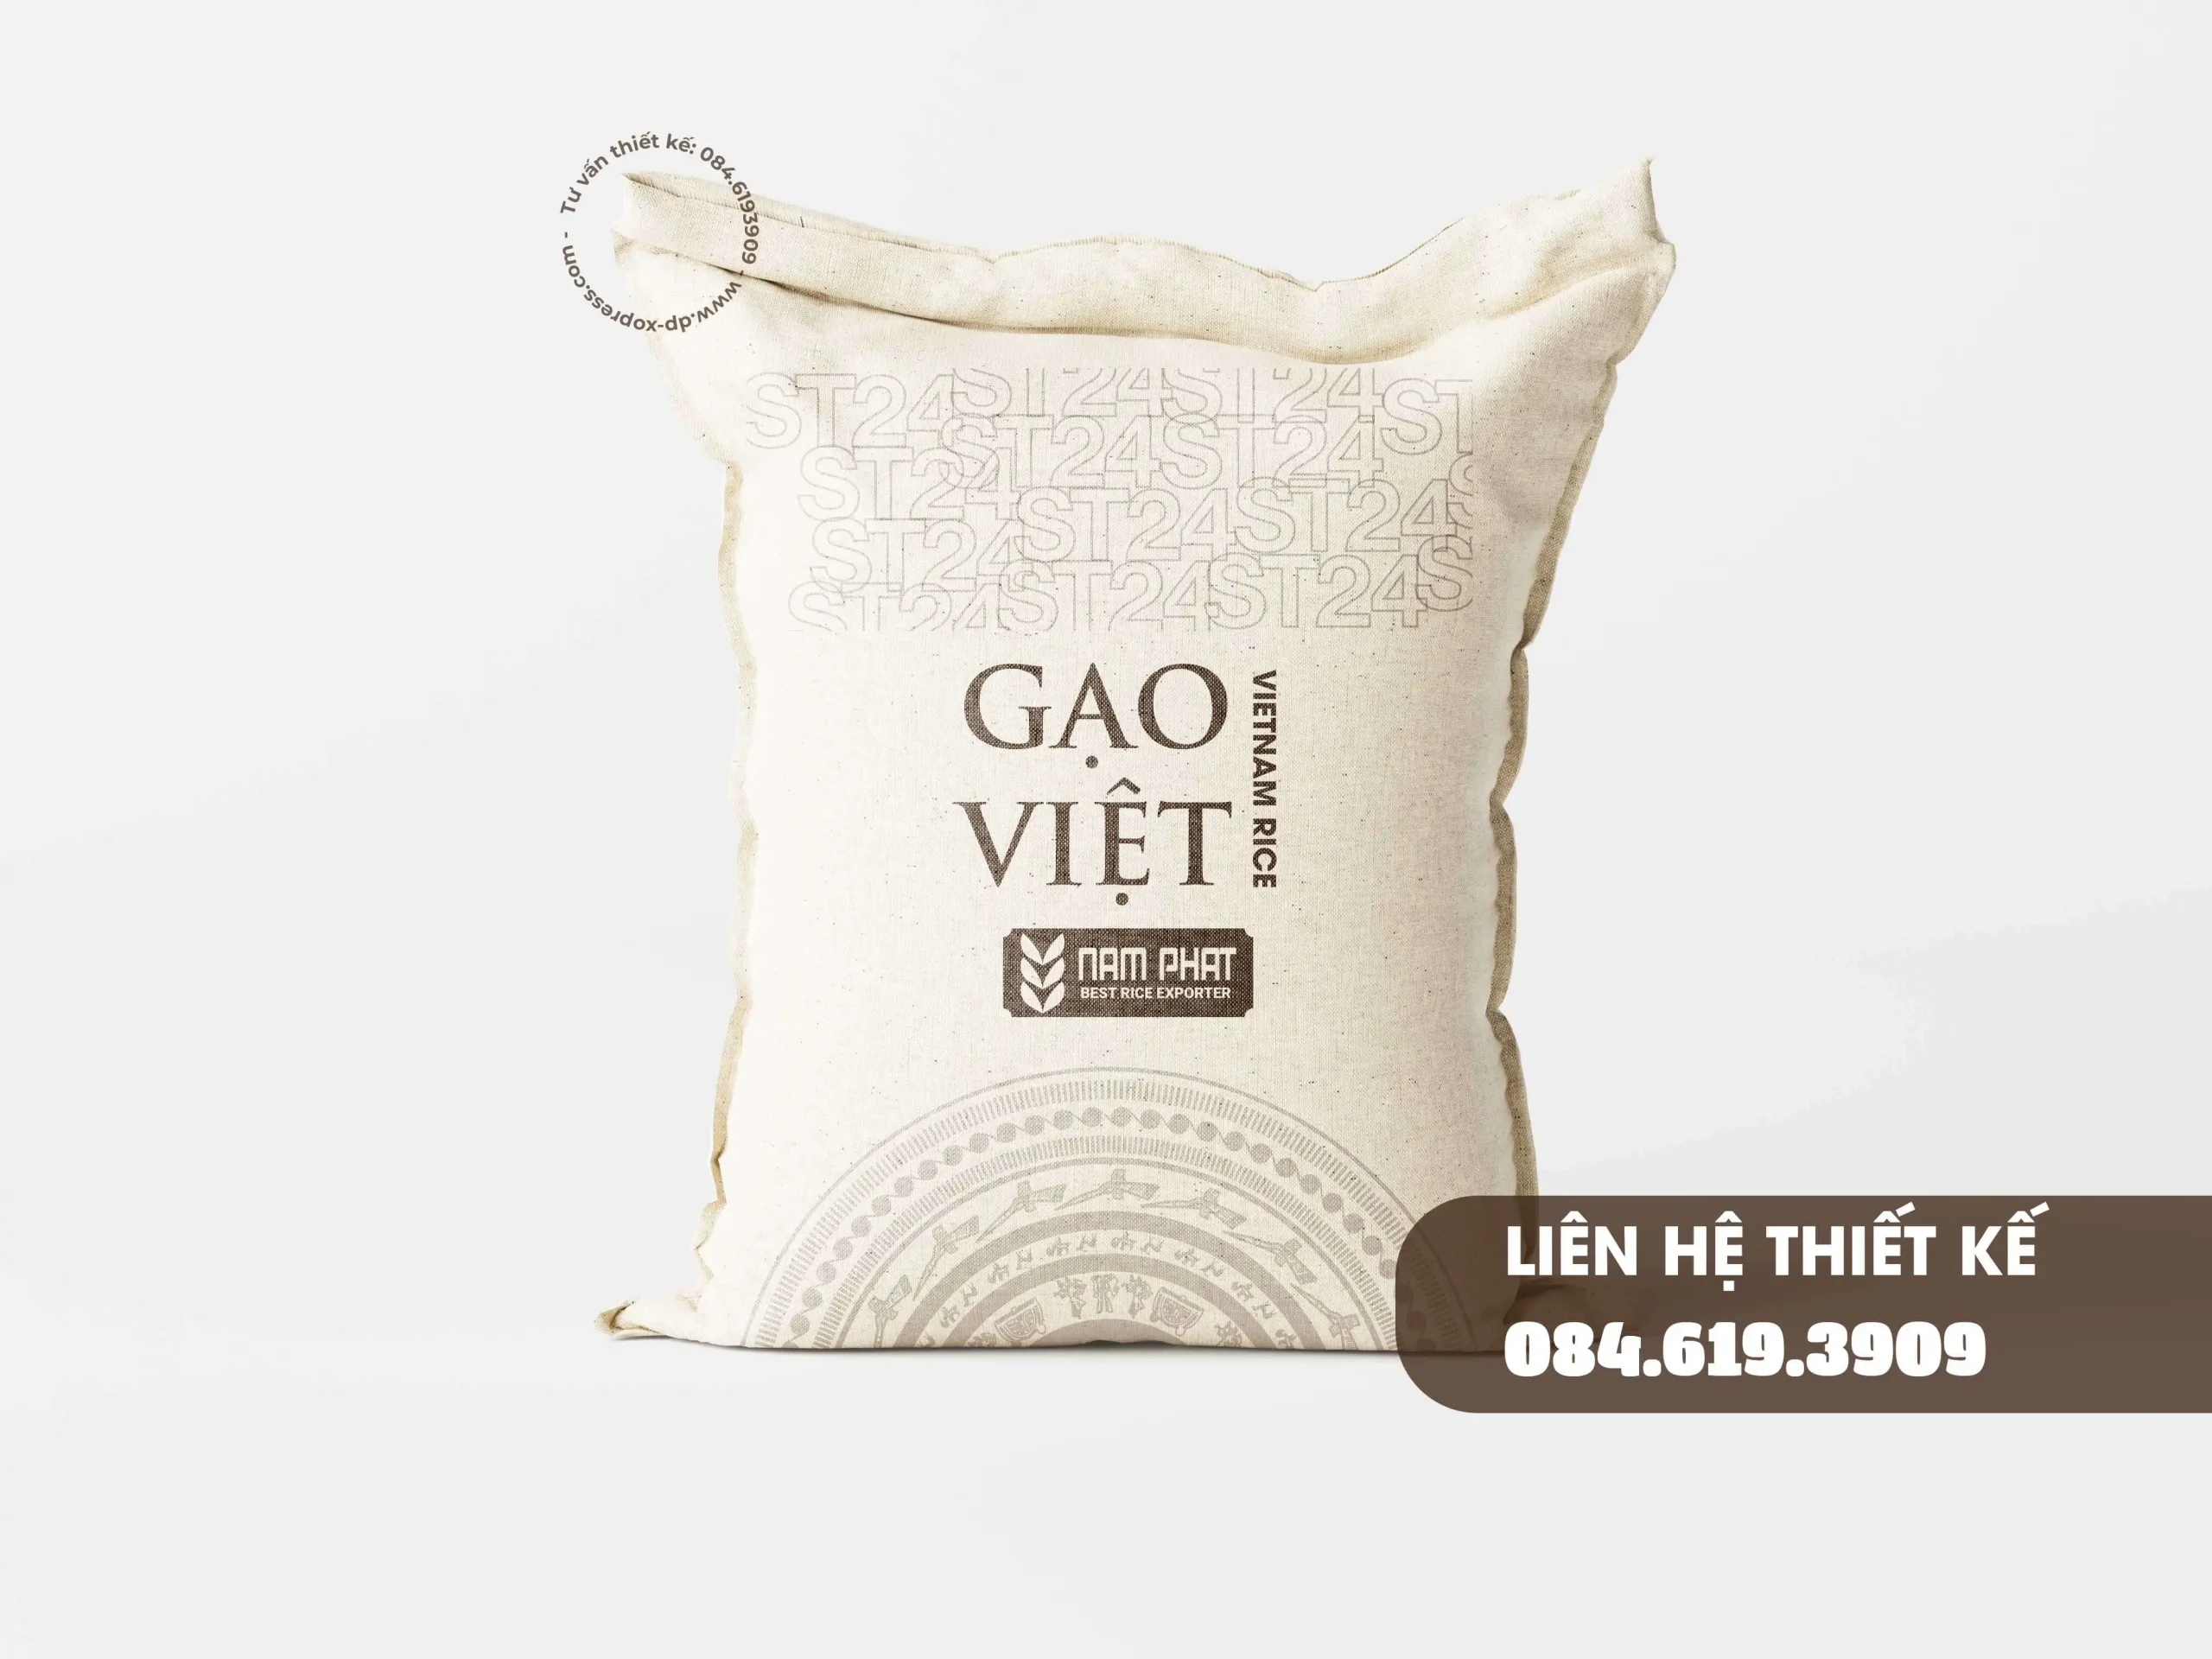 Hình minh hoạ bao bì gạo Việt ST24 chất liệu bố